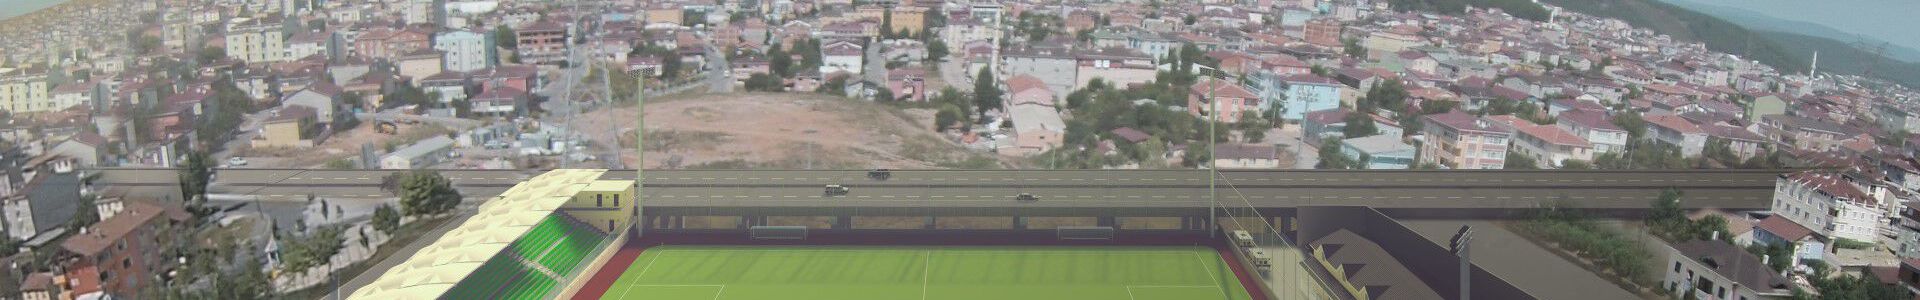 Sultanbeyli Stadium